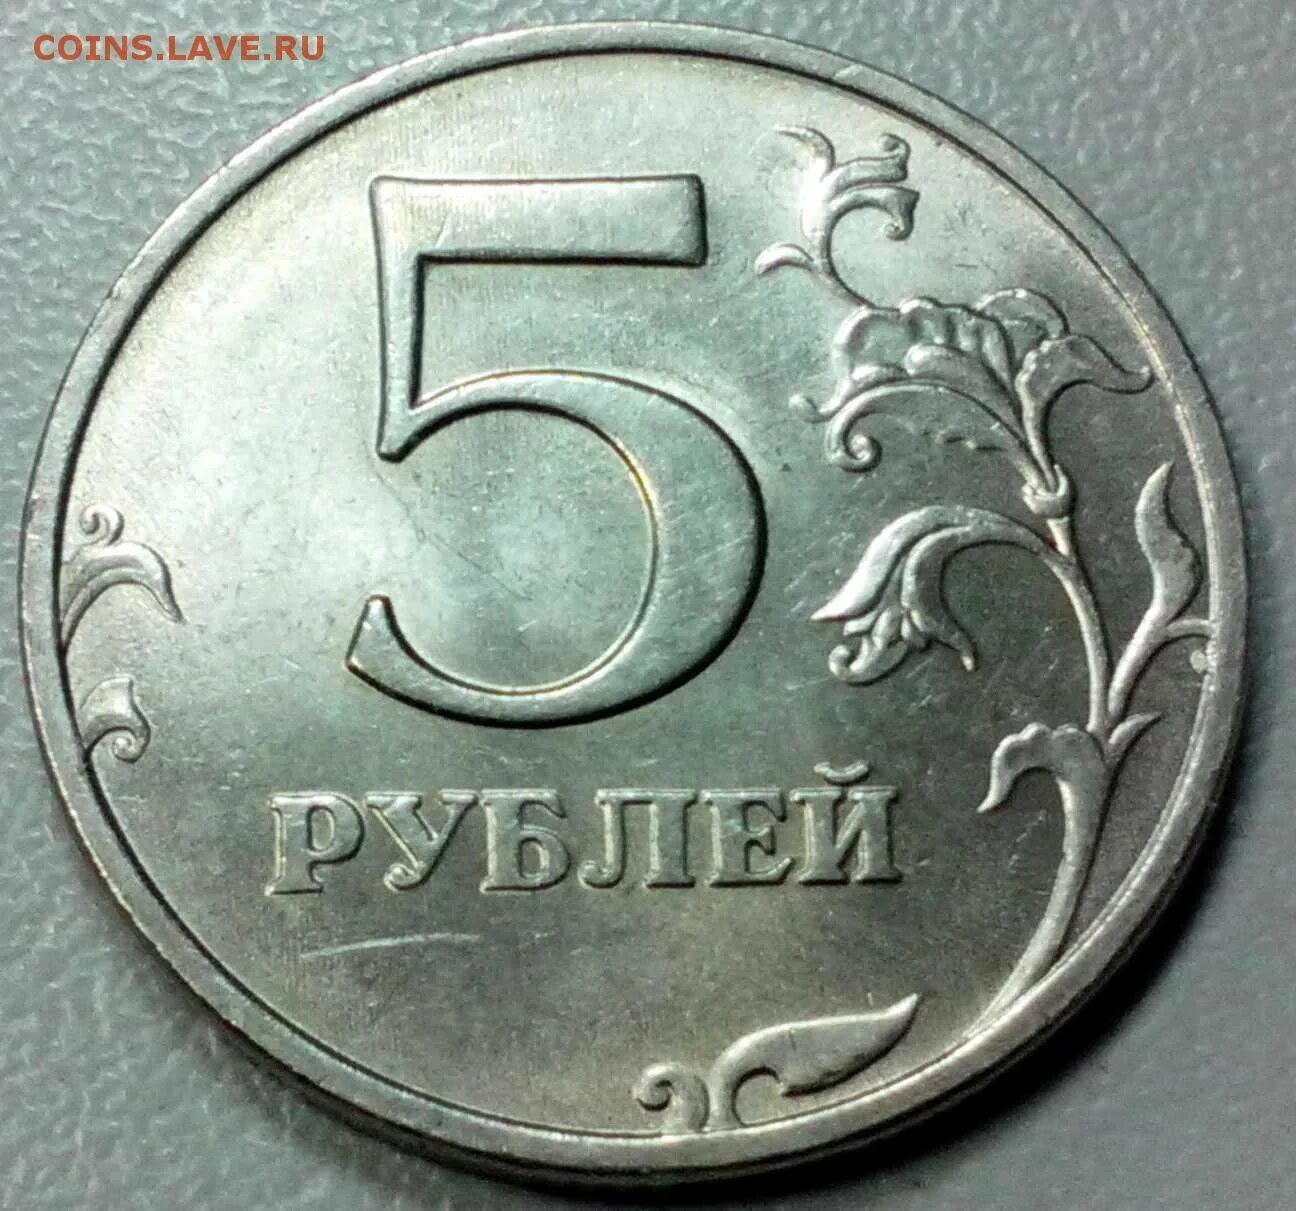 Пять рублей ММД 1998 года. Монета 5 рублей 1998 года ММД. Дай 5 рублей. Монета 5 рублей 1998 года весит. 5 рублей 90